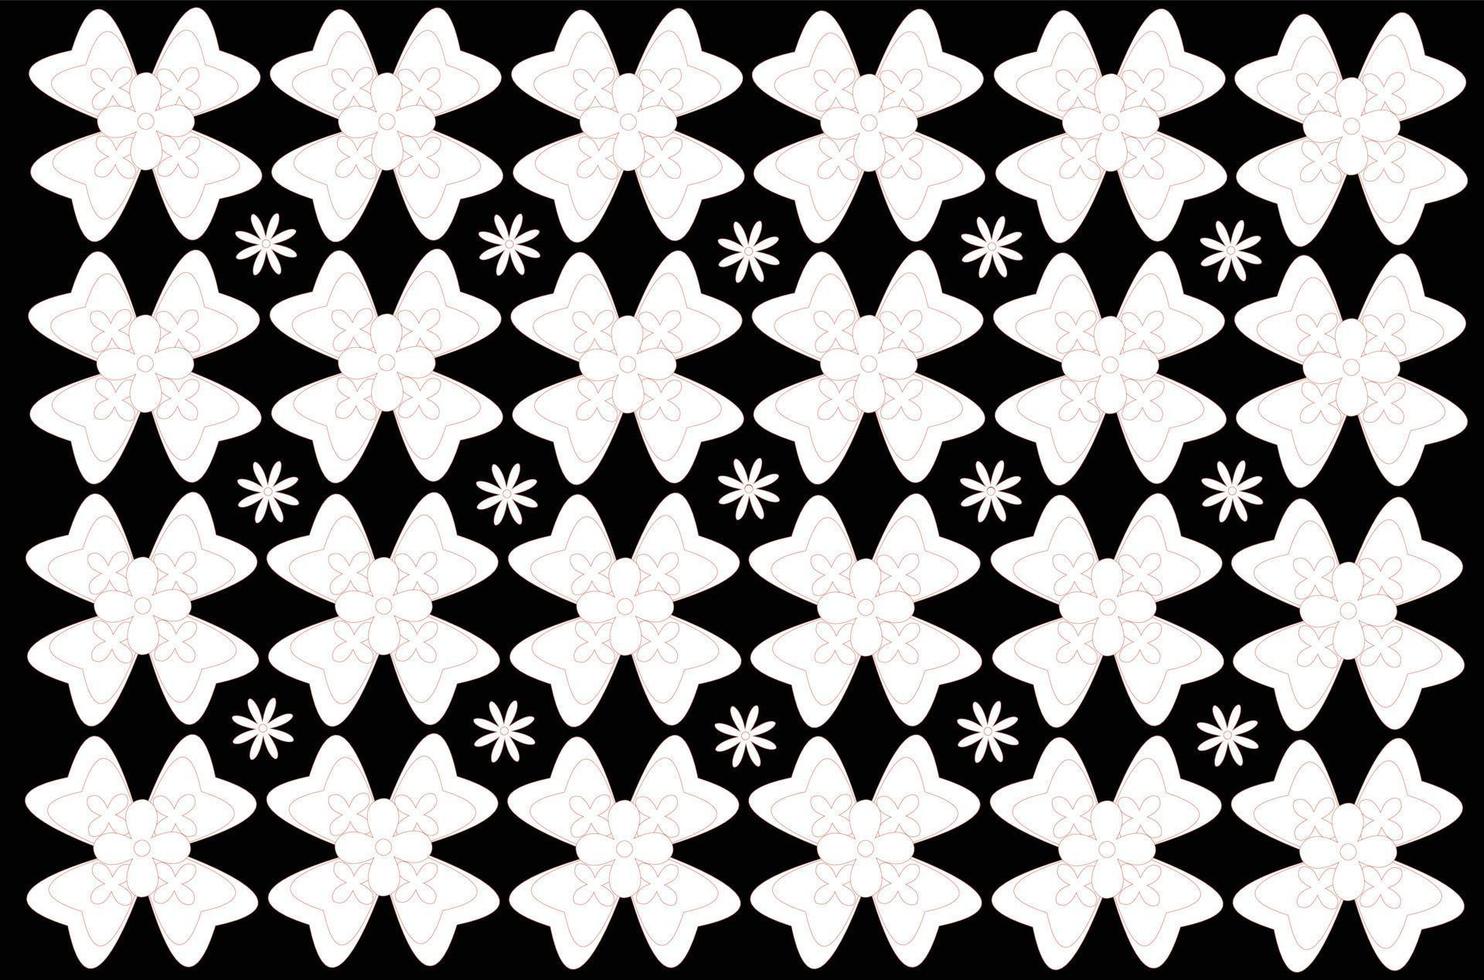 vector grafisch ontwerp batik patroon met bloemmotief. textuur zwart en wit. ontwerpen voor het bedrukken van stoffen, omslagen en grafische behoeften. moderne sjablonen.